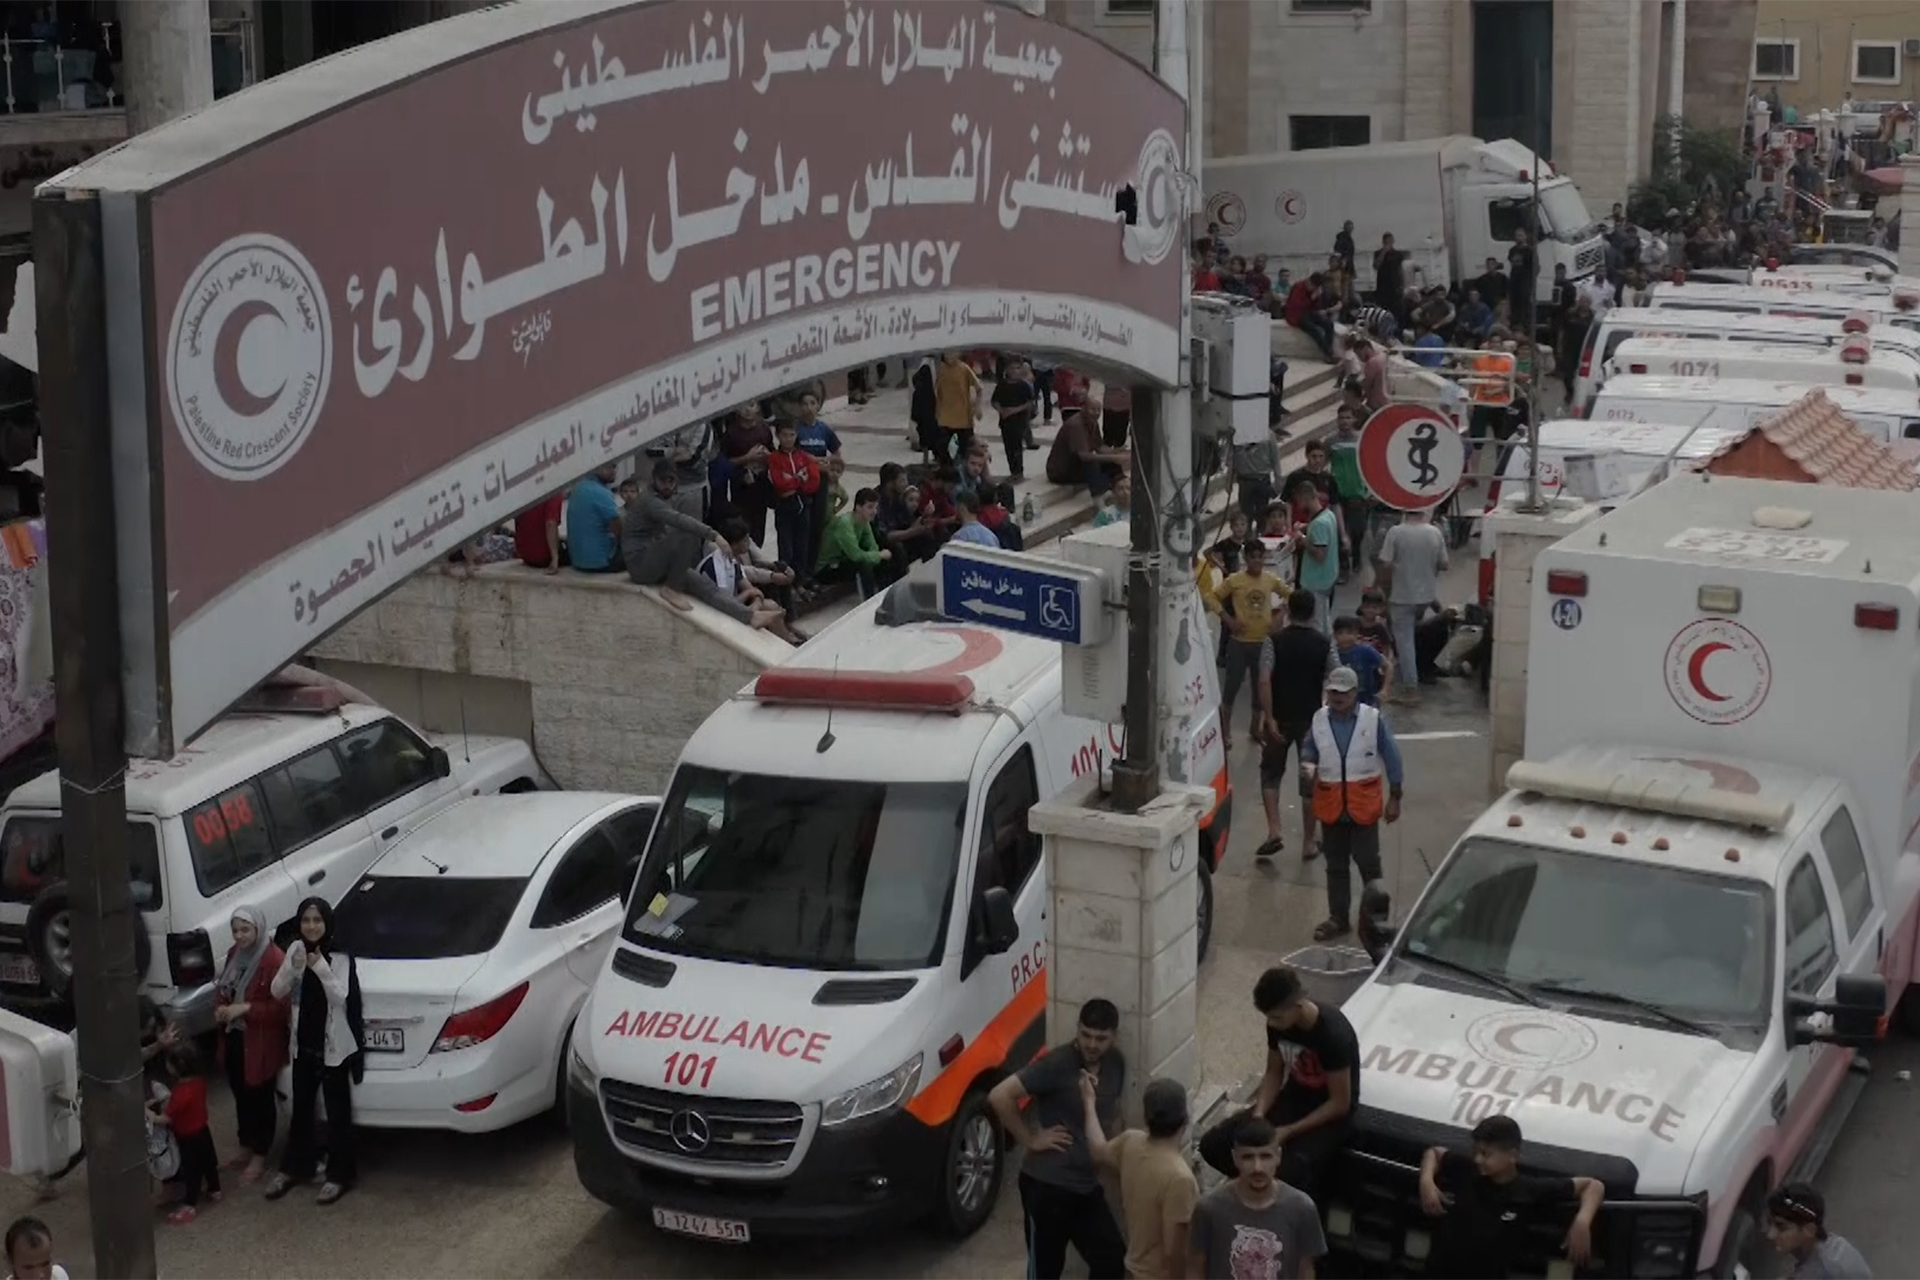 قصف إسرائيلي بجوار مستشفى القدس بغزة والهلال الأحمر يرفض إخلاءه | أخبار – البوكس نيوز